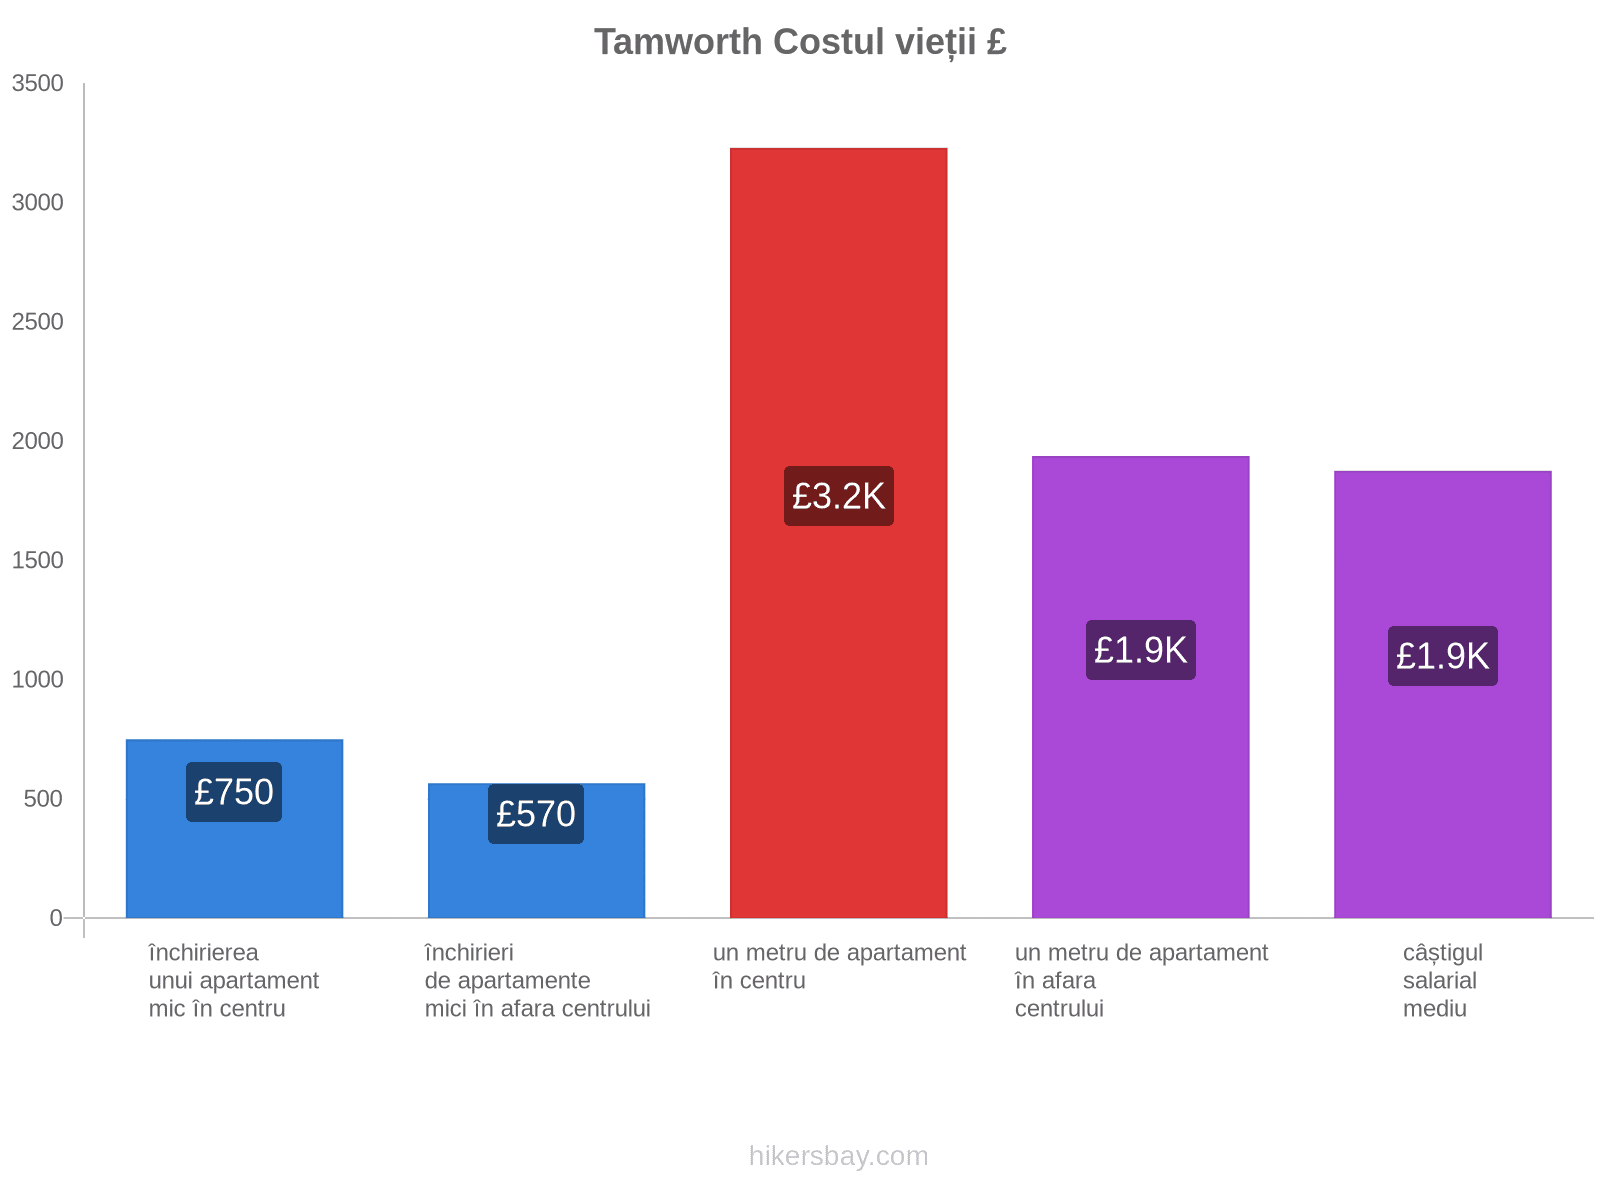 Tamworth costul vieții hikersbay.com